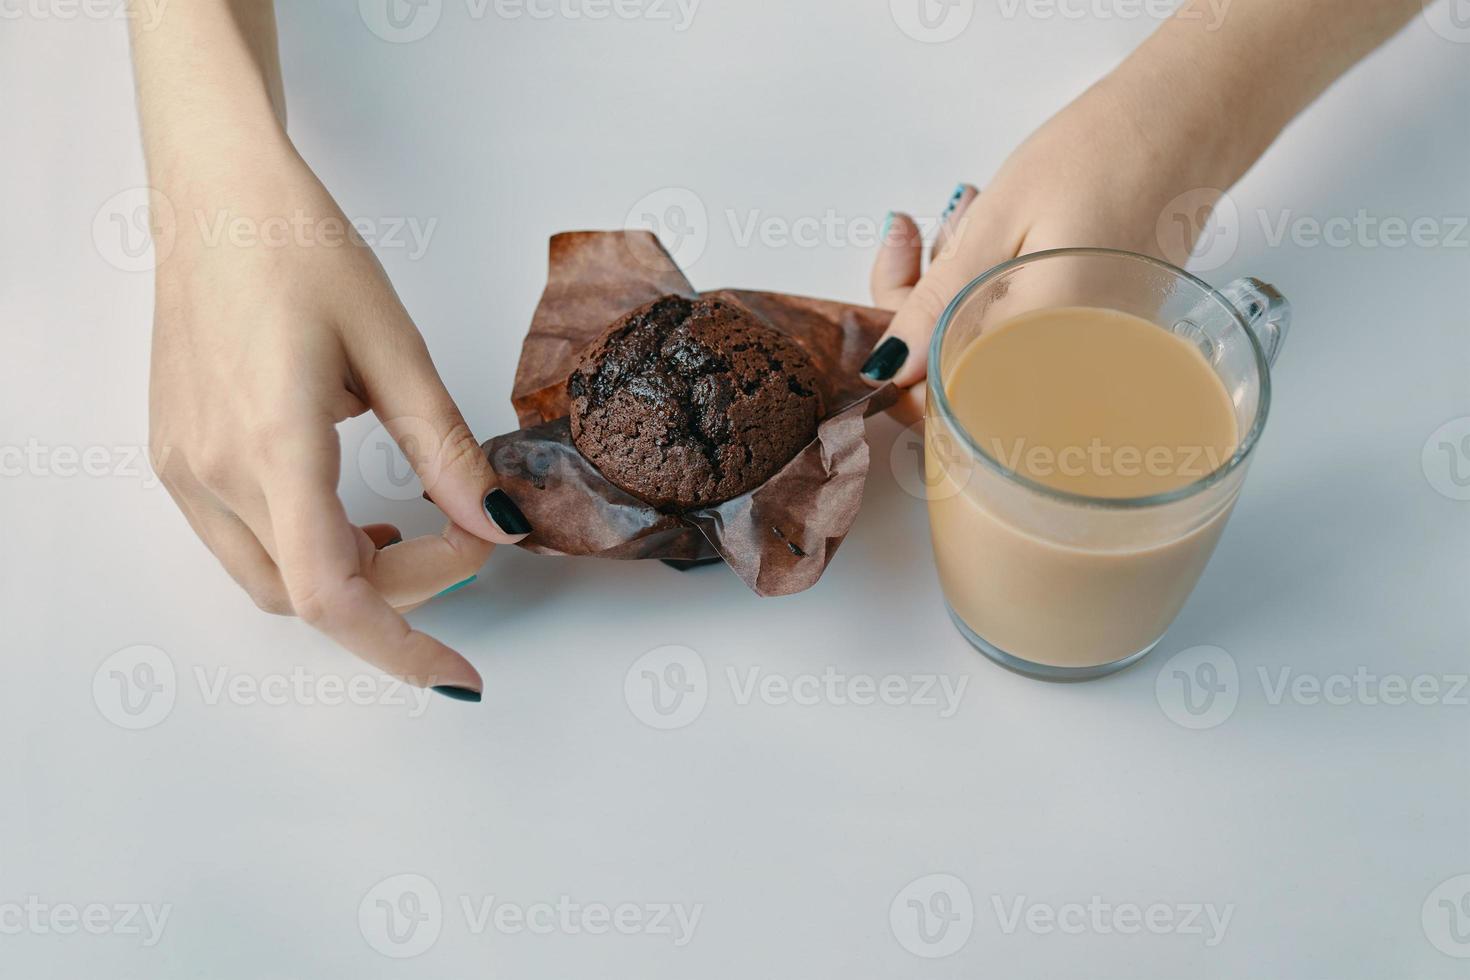 vrouwenhanden pakken een chocolademuffin uit foto